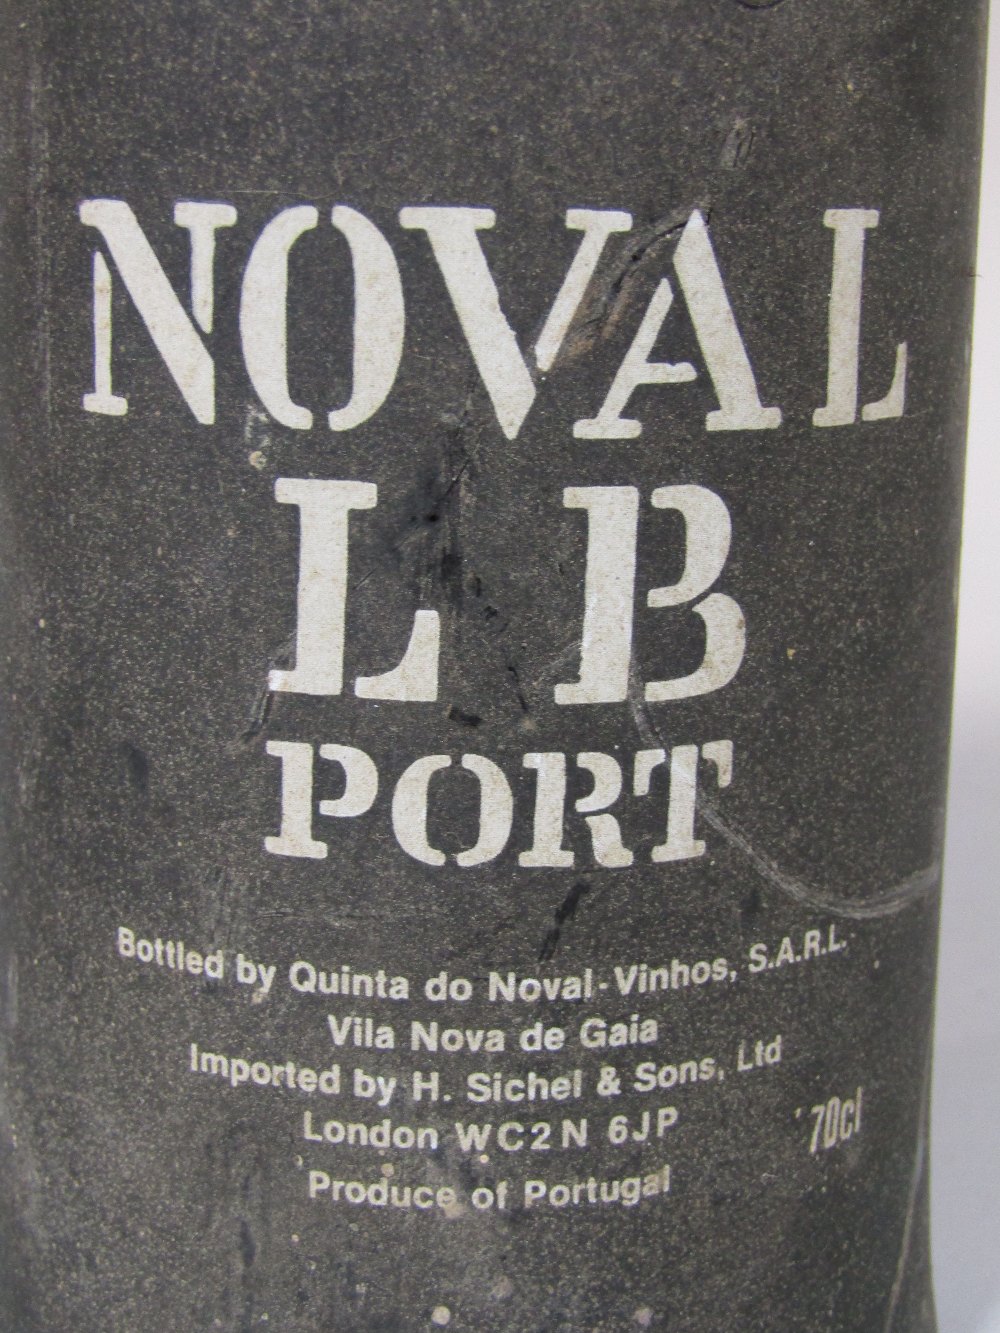 A Noval bottle of port - Image 2 of 2